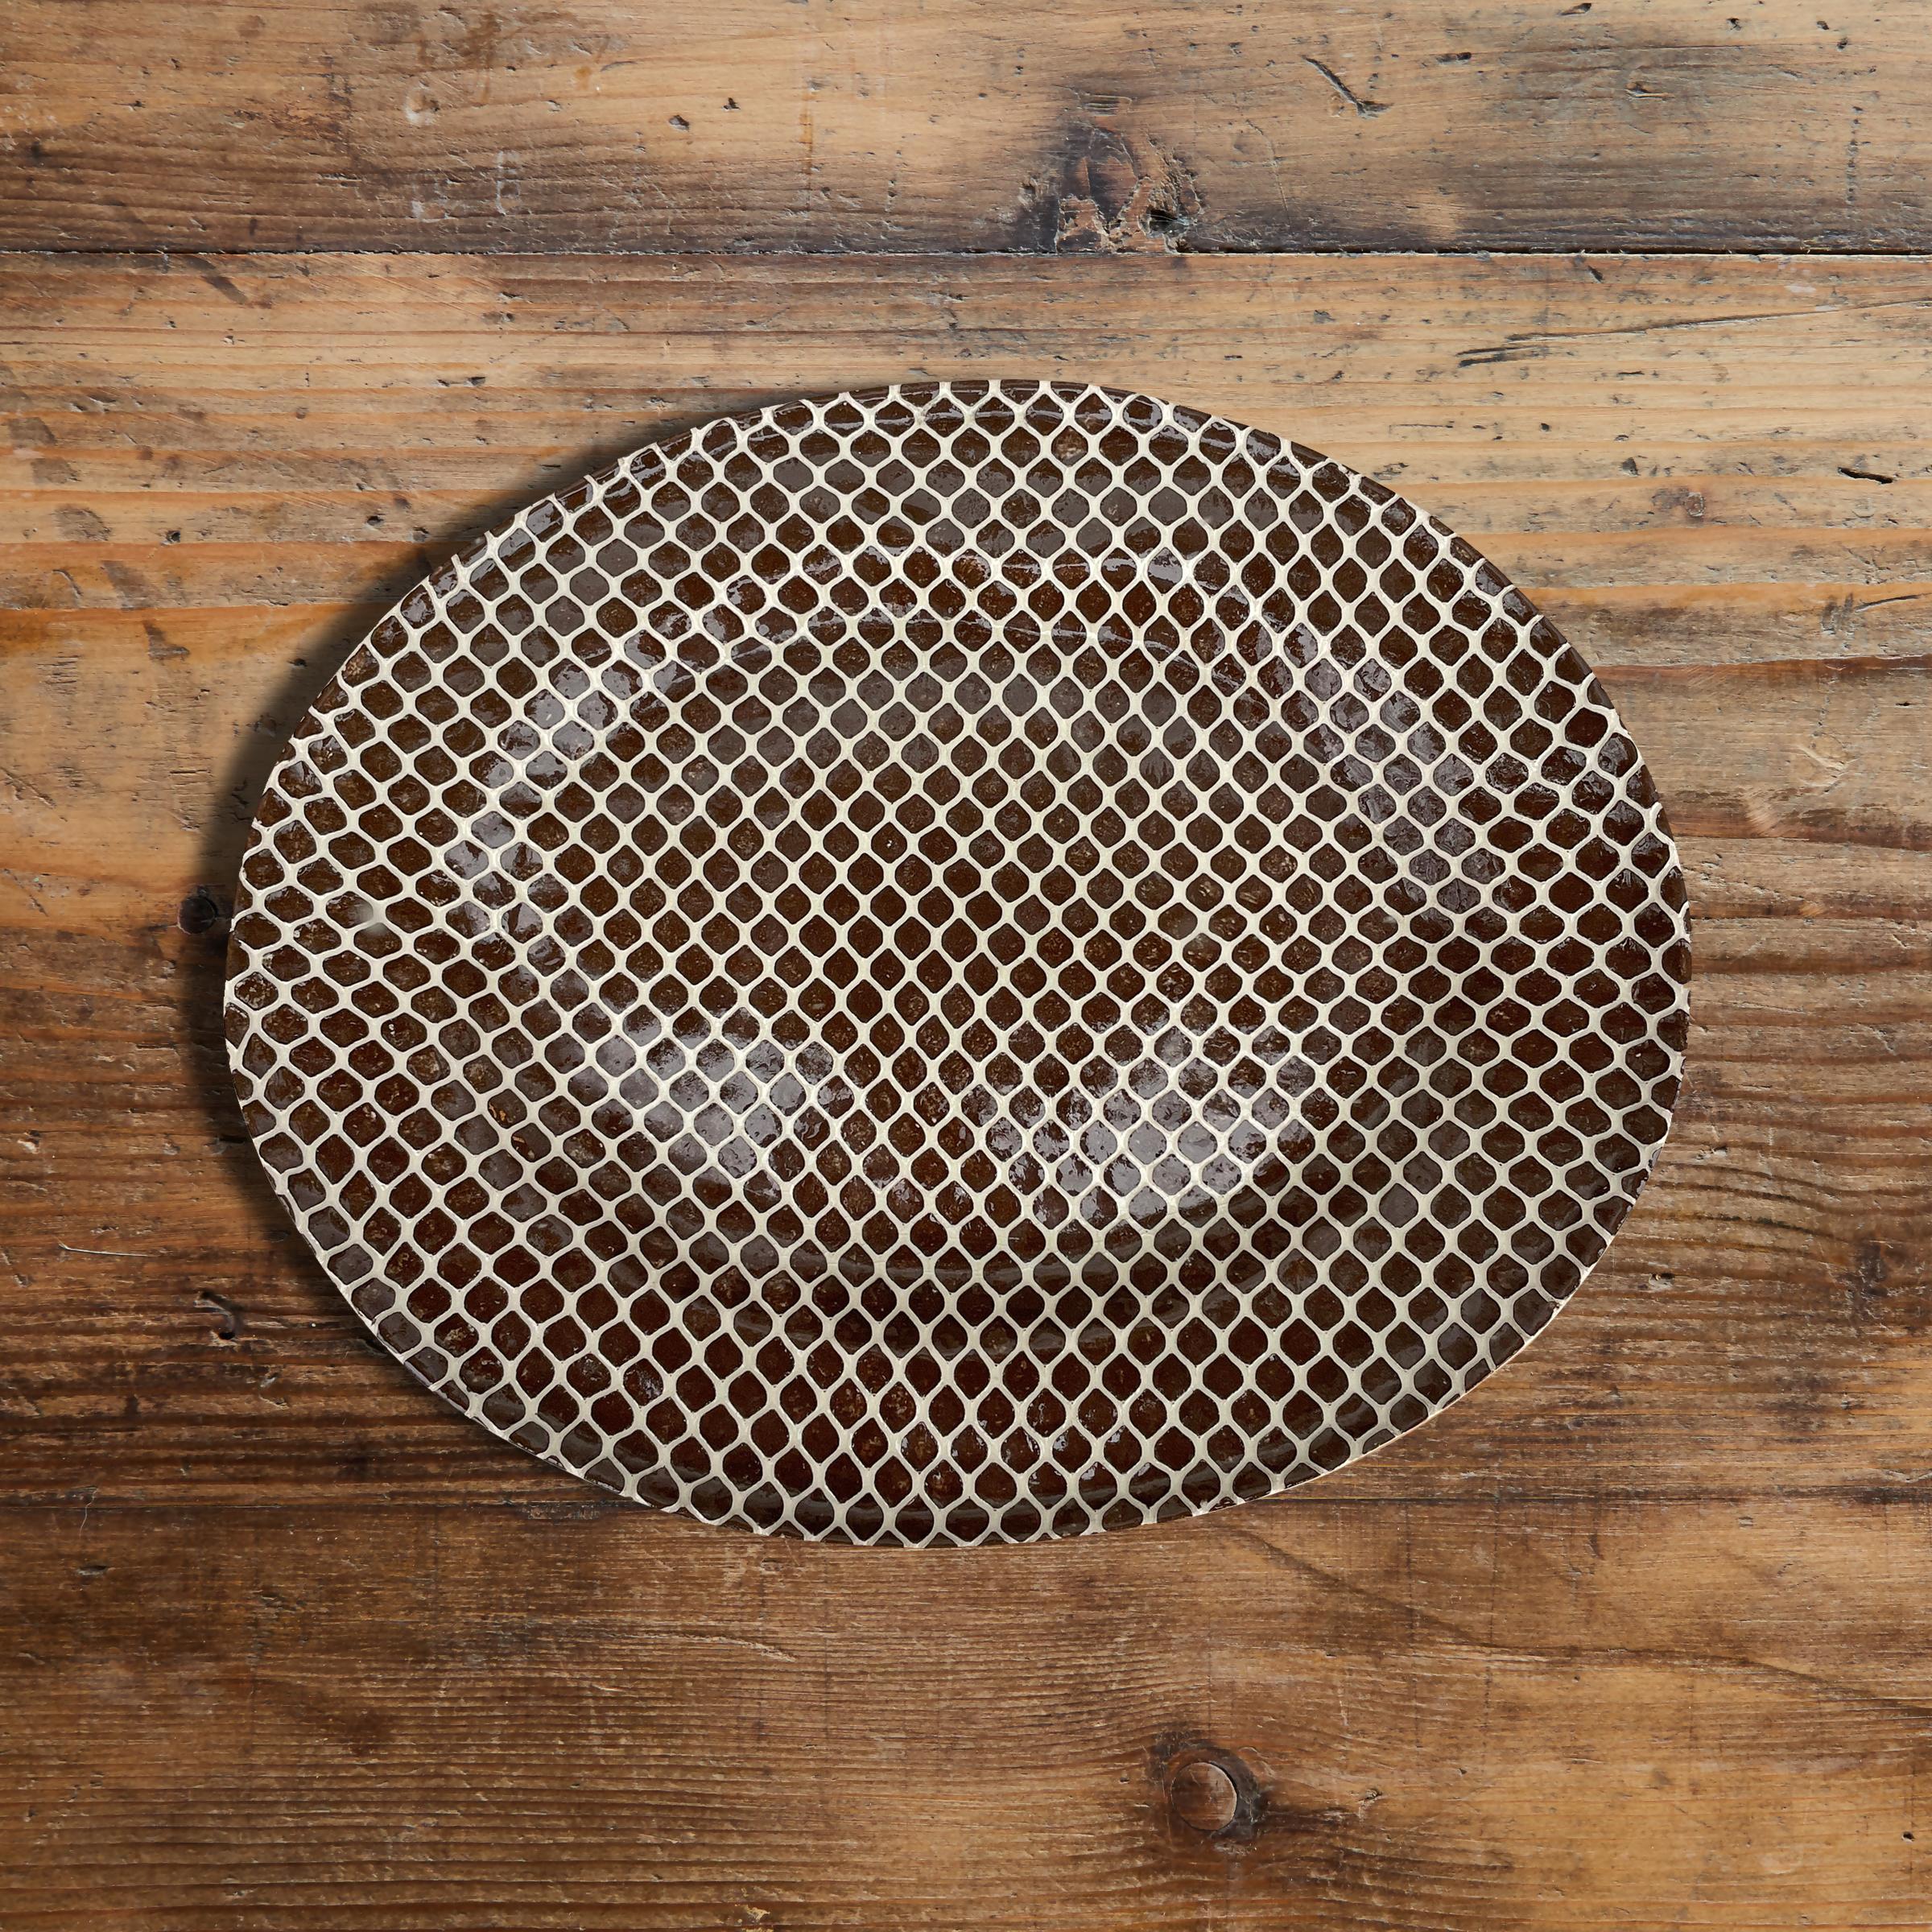 Eine auffallend große, handgefertigte Platte von Studio Pottery mit einem aufgedruckten Muster und einer Glasur in Braun und Weiß. Unleserlich auf dem Boden signiert und datiert 2016.